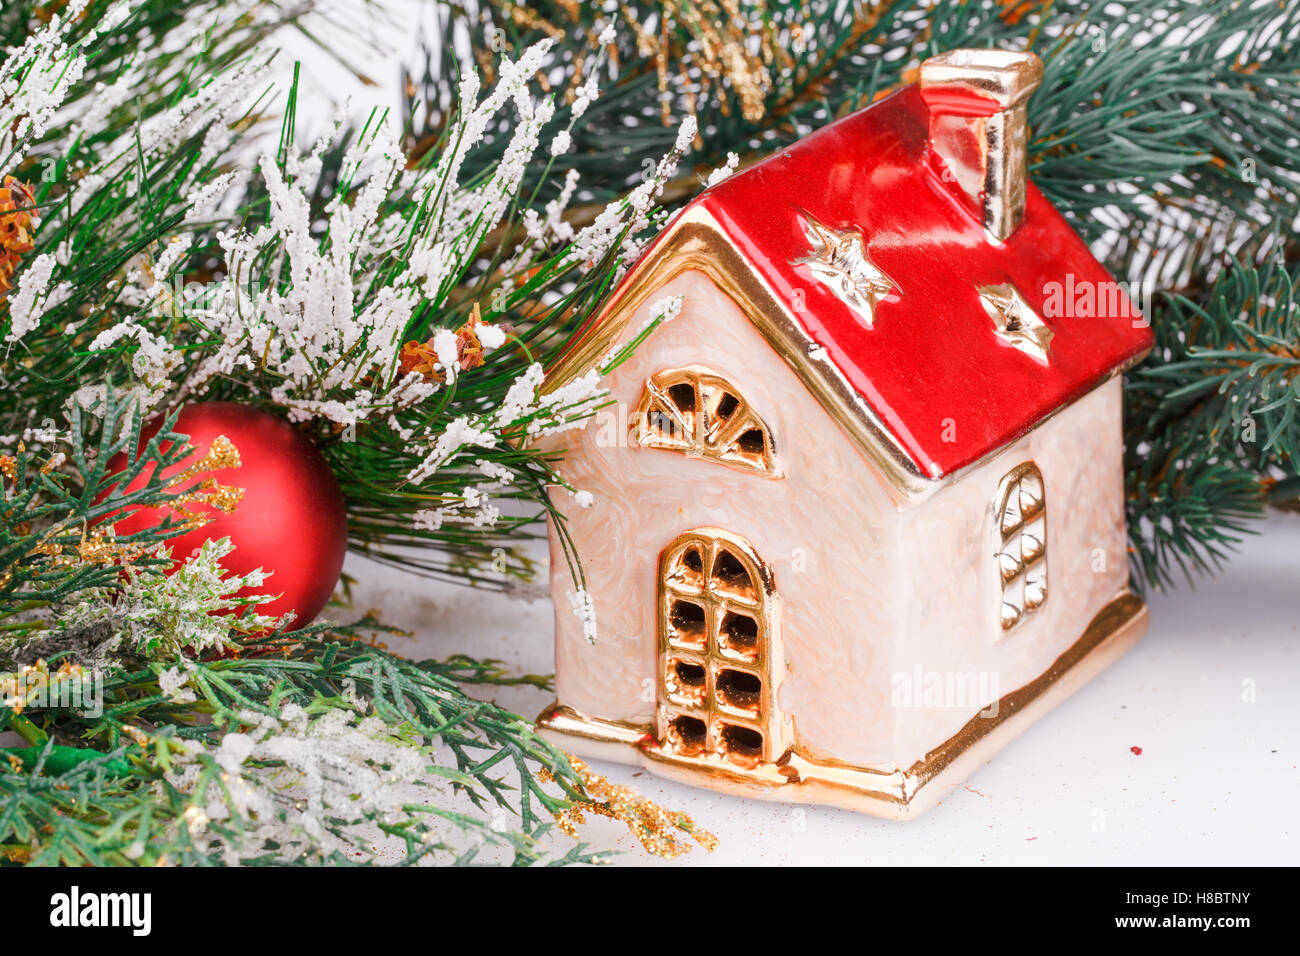 Weihnachts-Dekoration mit roten Ball, Tanne Zweig und Spielzeug Haus. Stockfoto